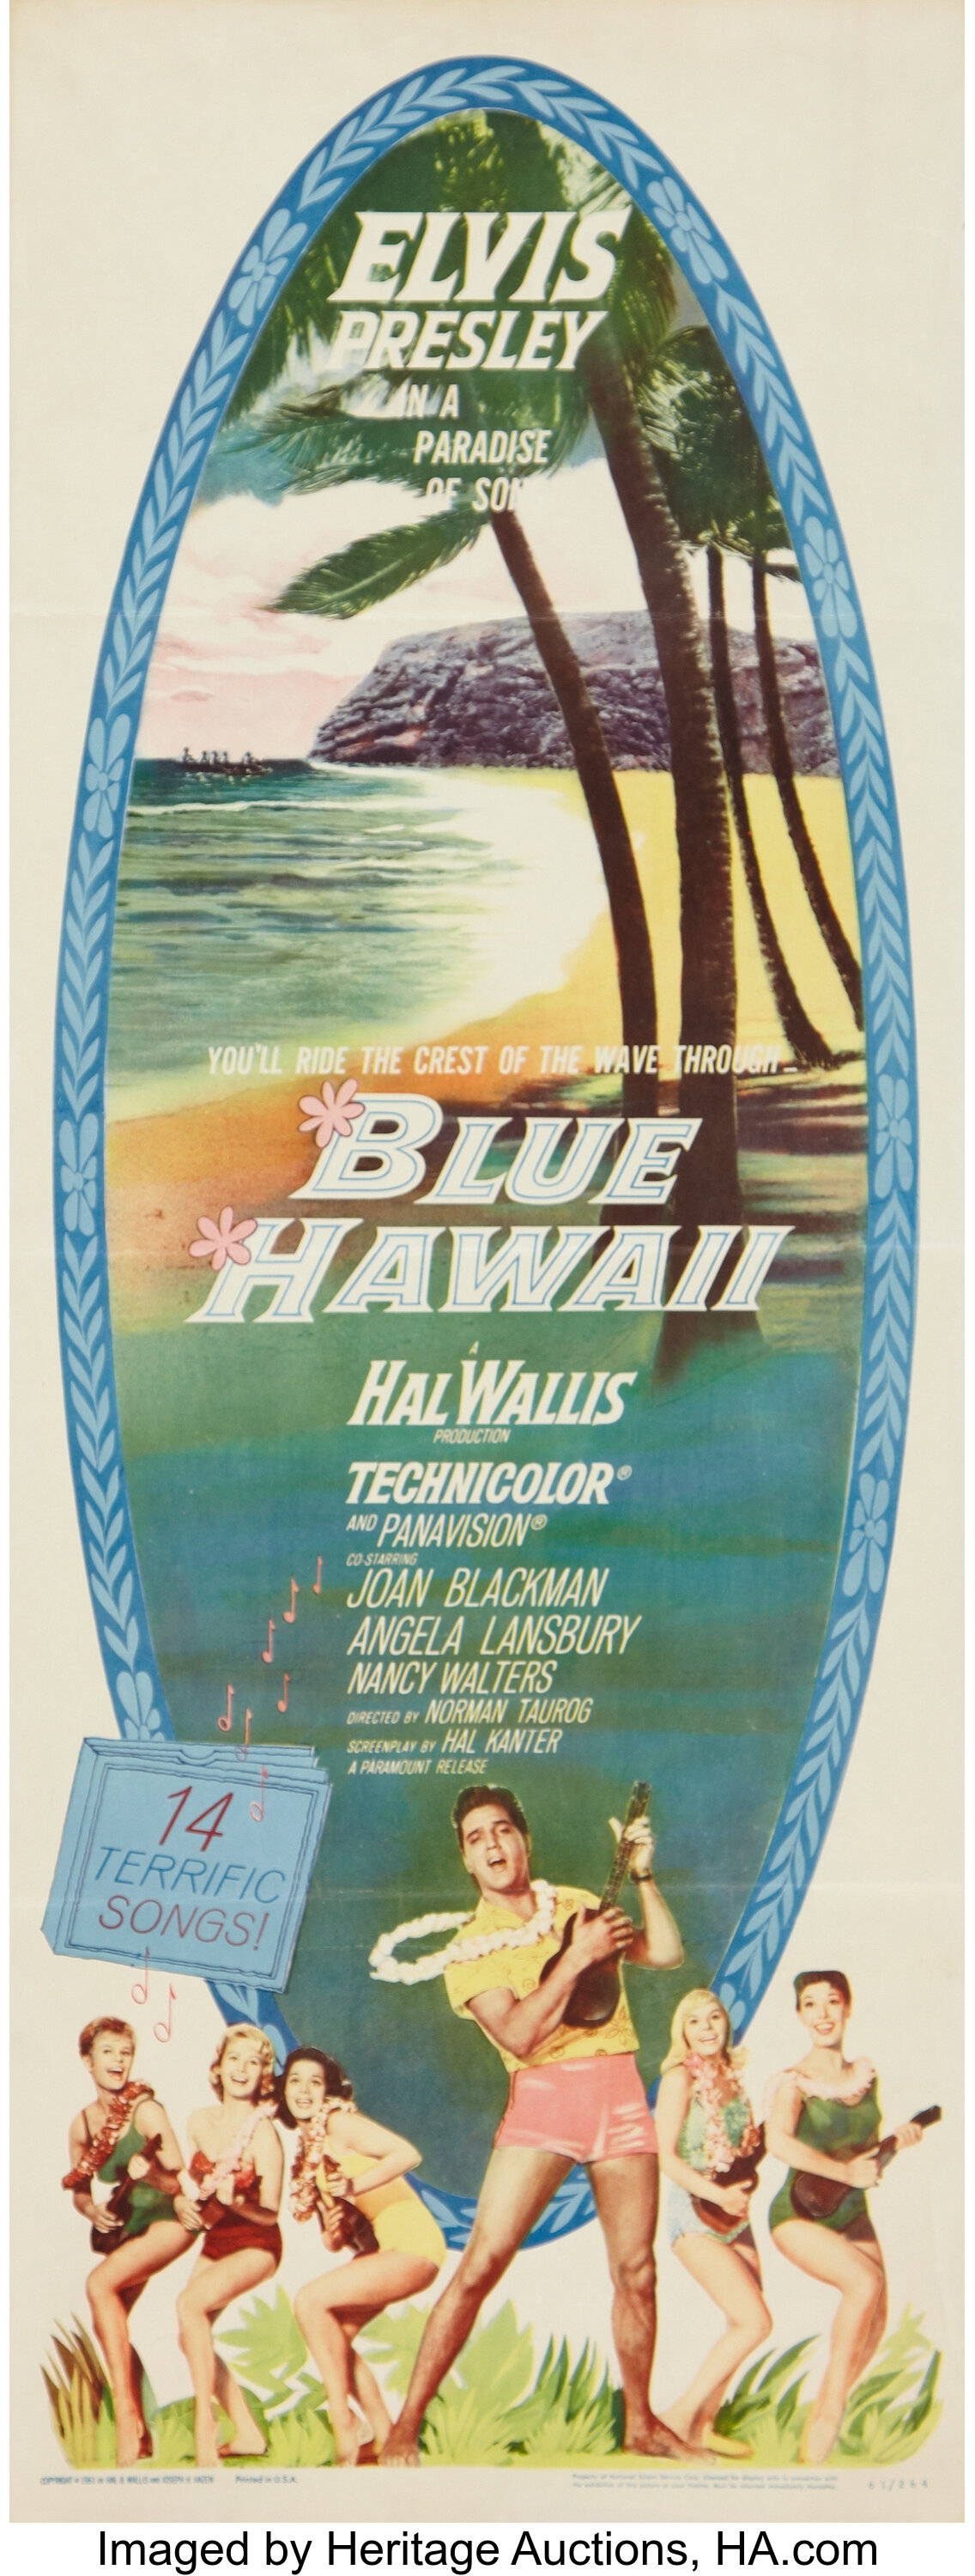 blue hawaii movie angela lansbury